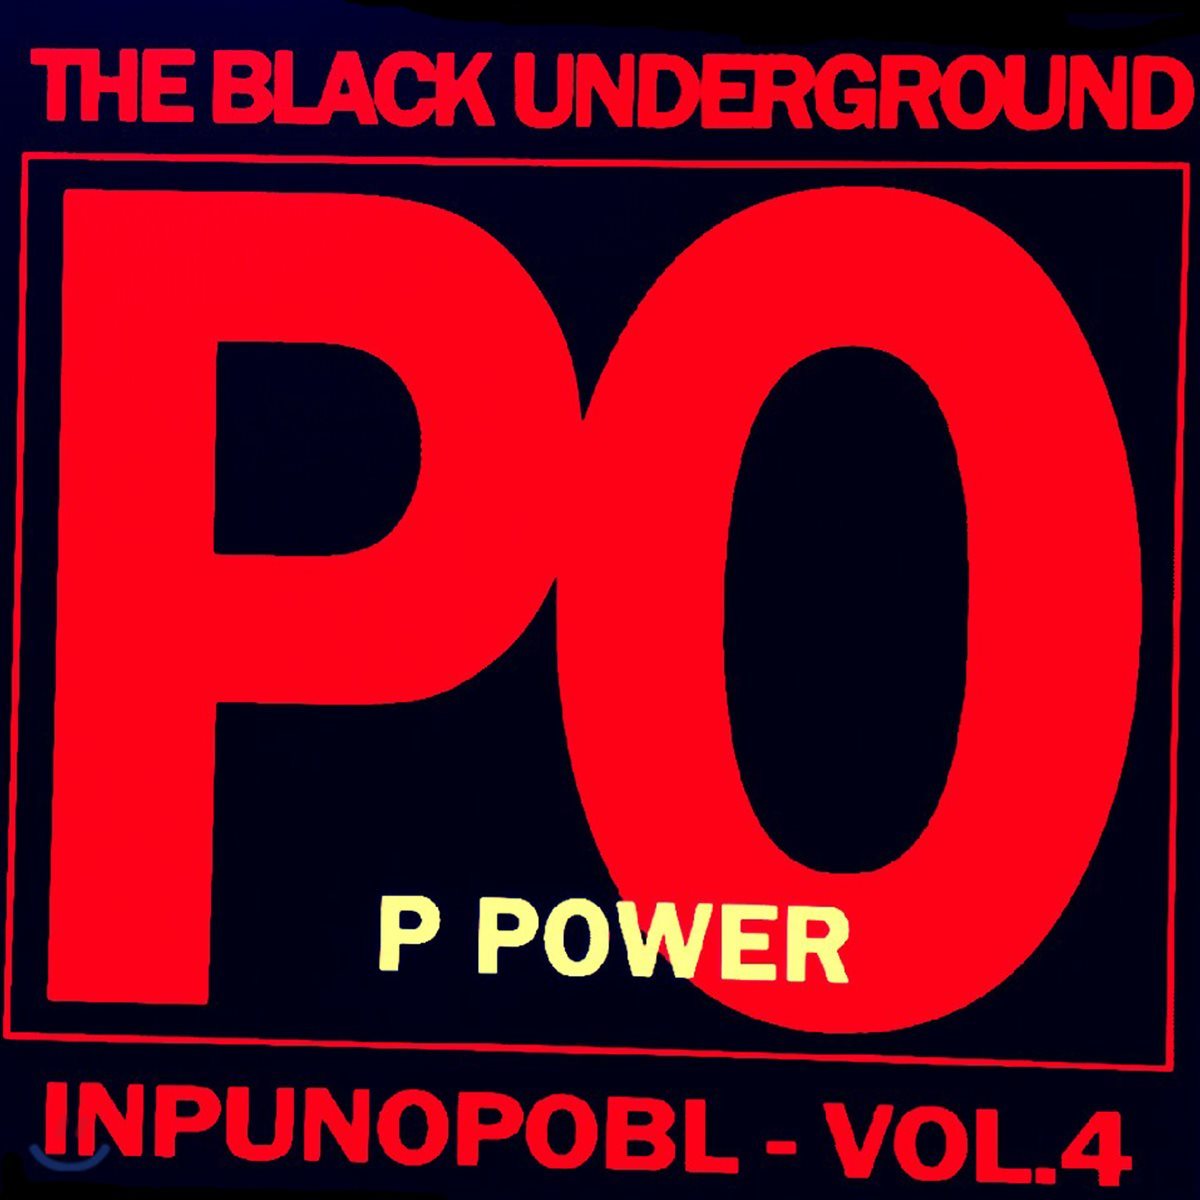 The Black Underground - Pop Power